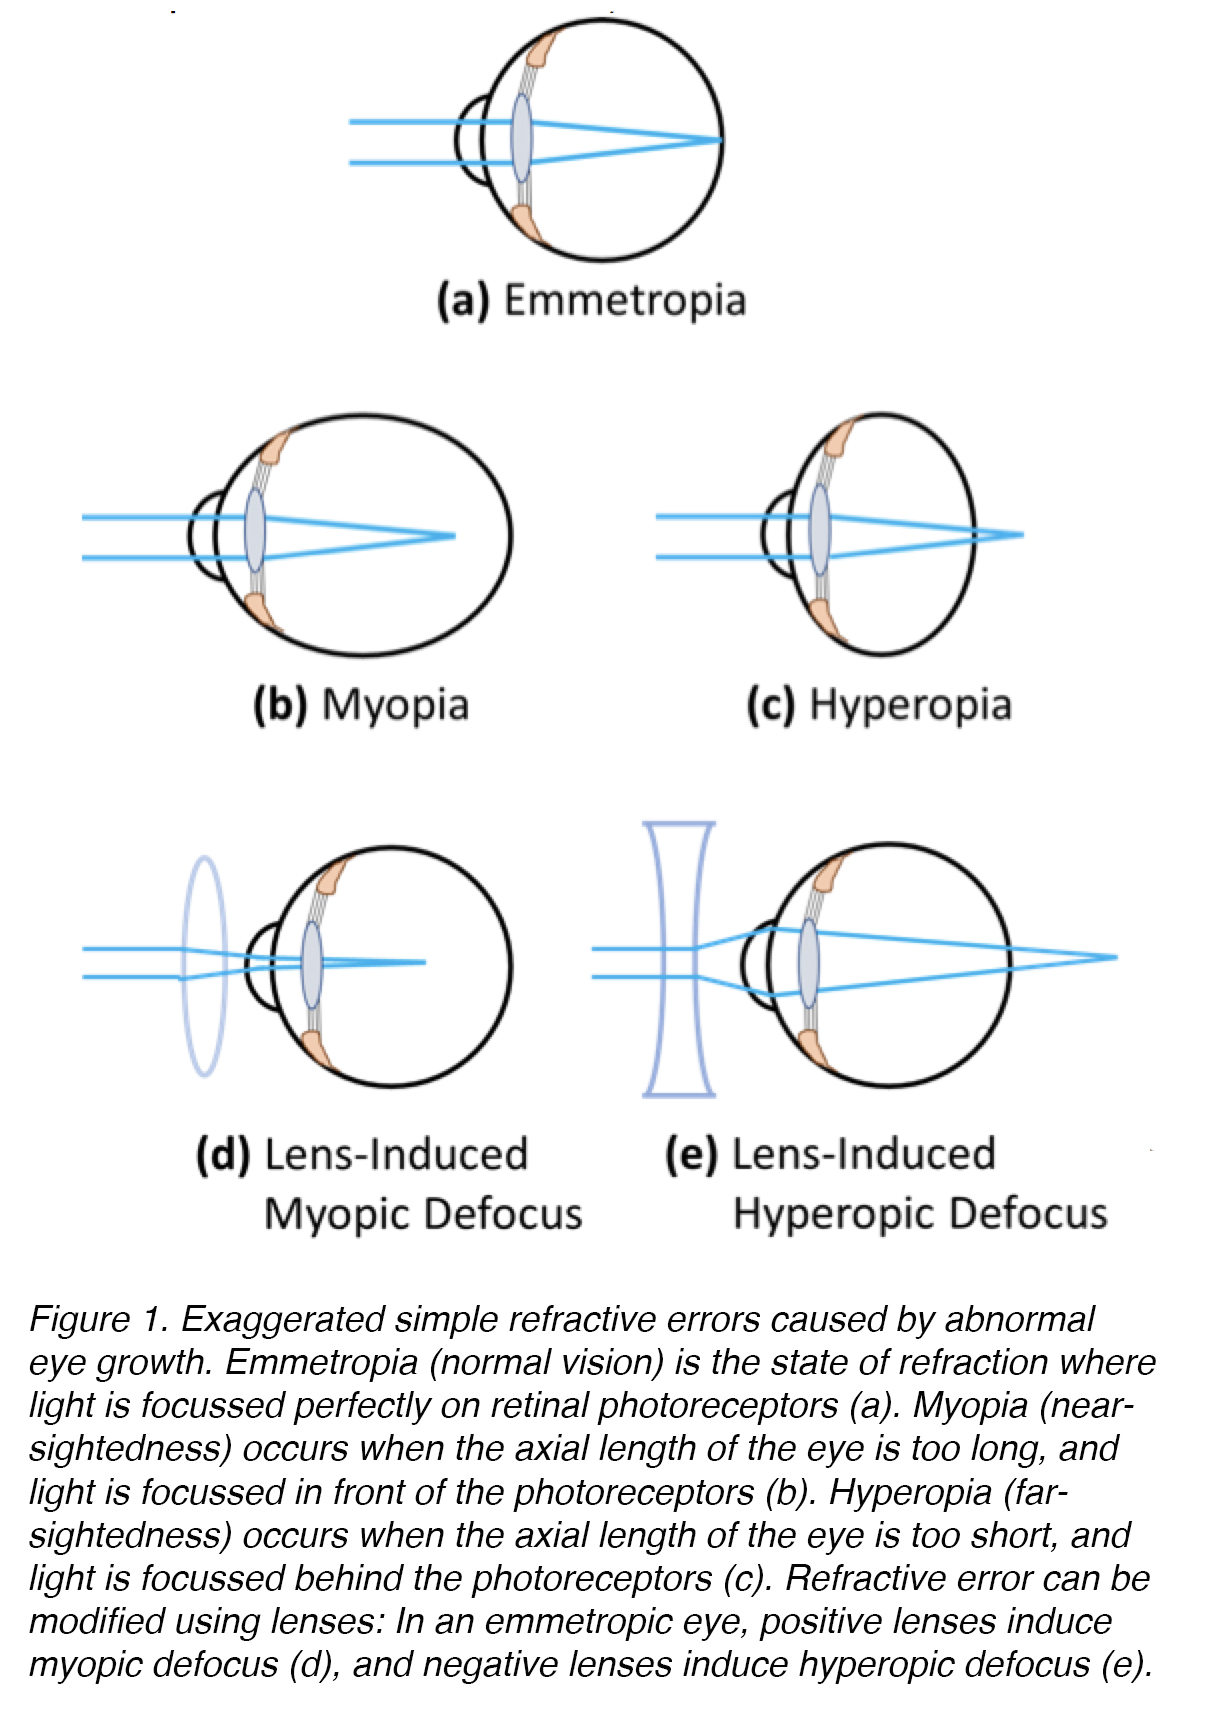 látásteszt piros kör hogyan lehet megmenteni a látást glaukómában